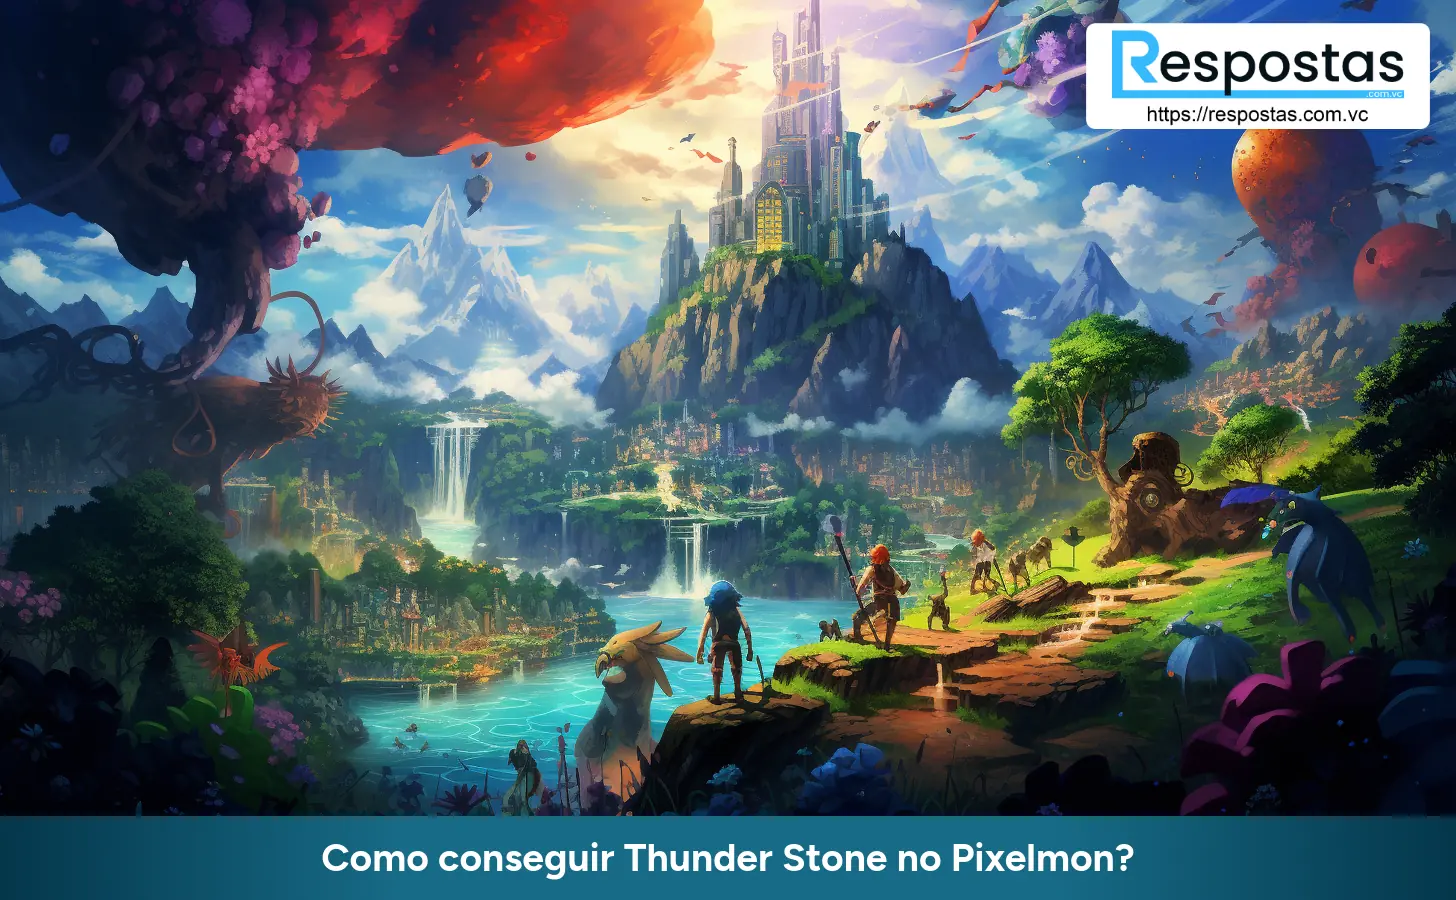 Como conseguir Thunder Stone no Pixelmon?